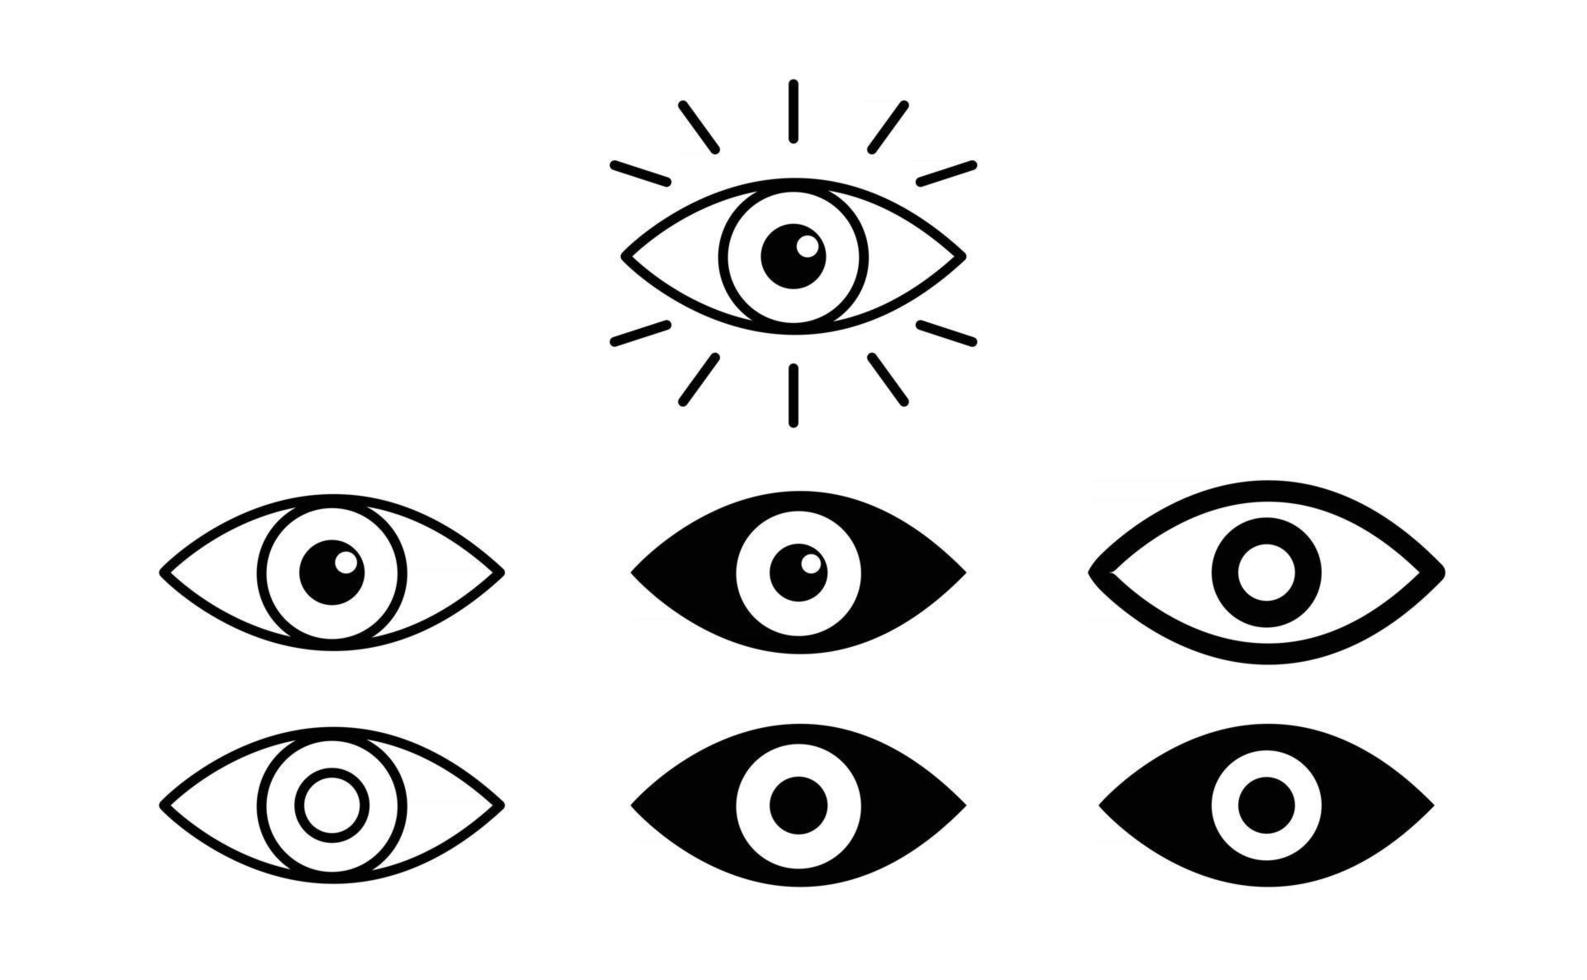 conjunto de iconos de ojo. símbolo de la vista. iconos de ojo de escaneo de retina. colección de ojos simples. vector libre de silueta de ojo